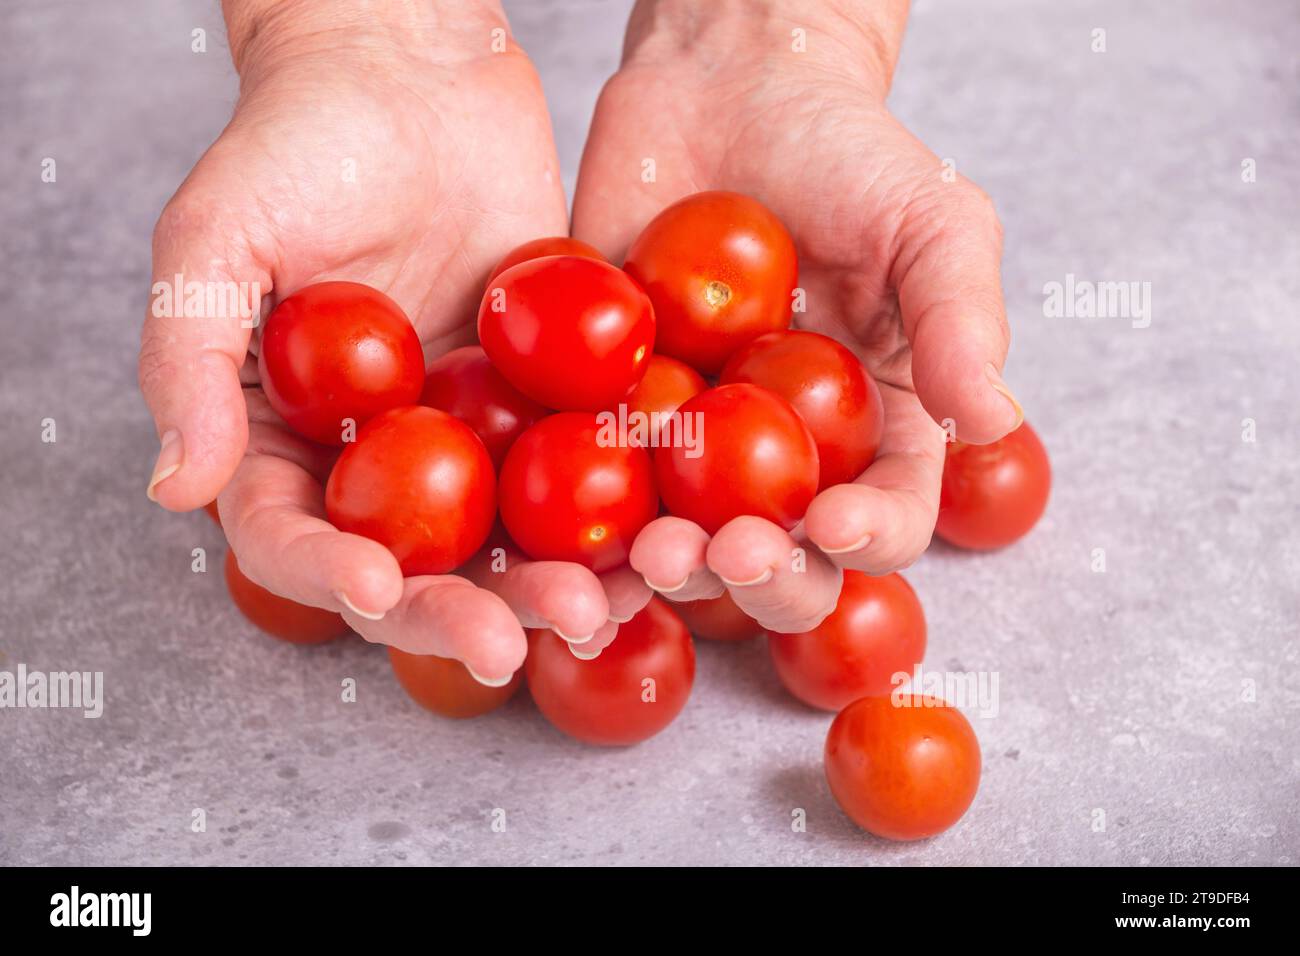 Pomodori appena raccolti in mani. Donna in possesso di pomodori ciliegini, primo piano con attenzione selettiva Foto Stock